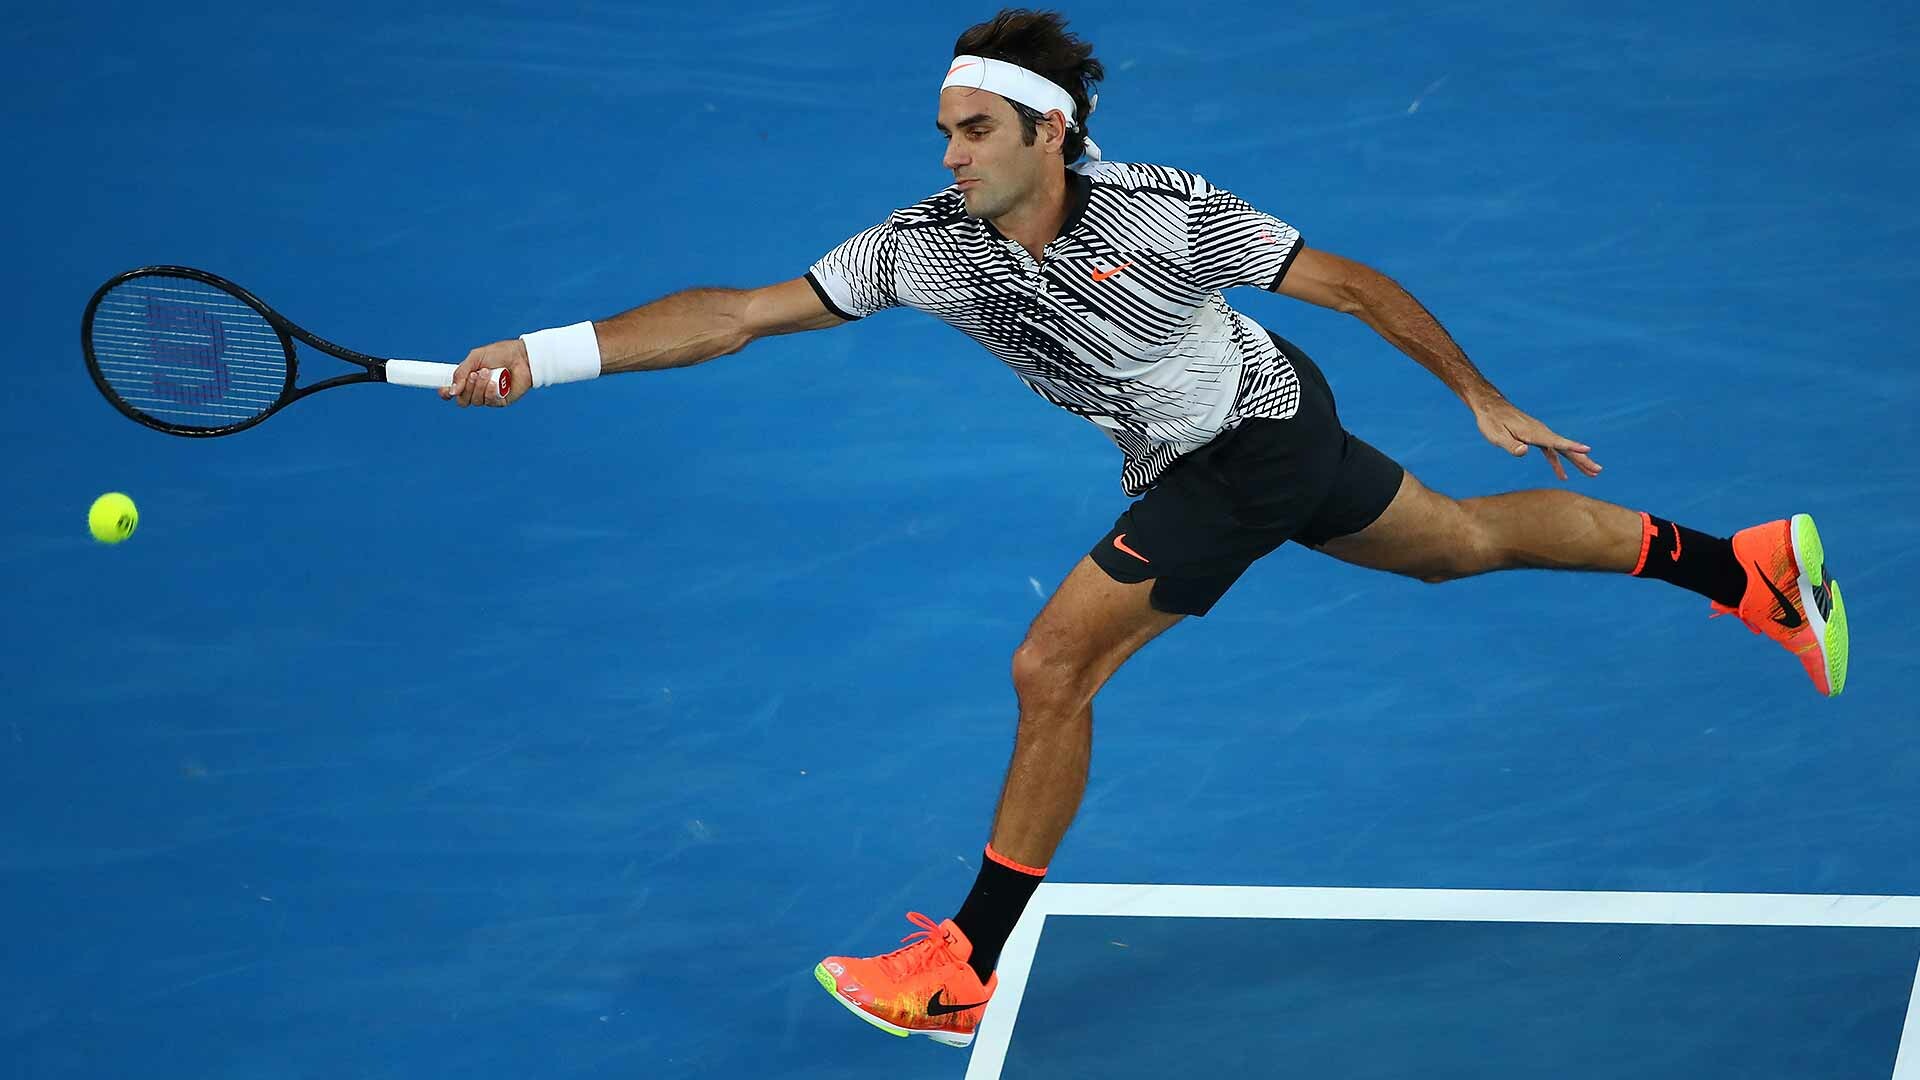 Roger Federer: Won the men's singles tennis title at the 2006 Australian Open. 1920x1080 Full HD Wallpaper.